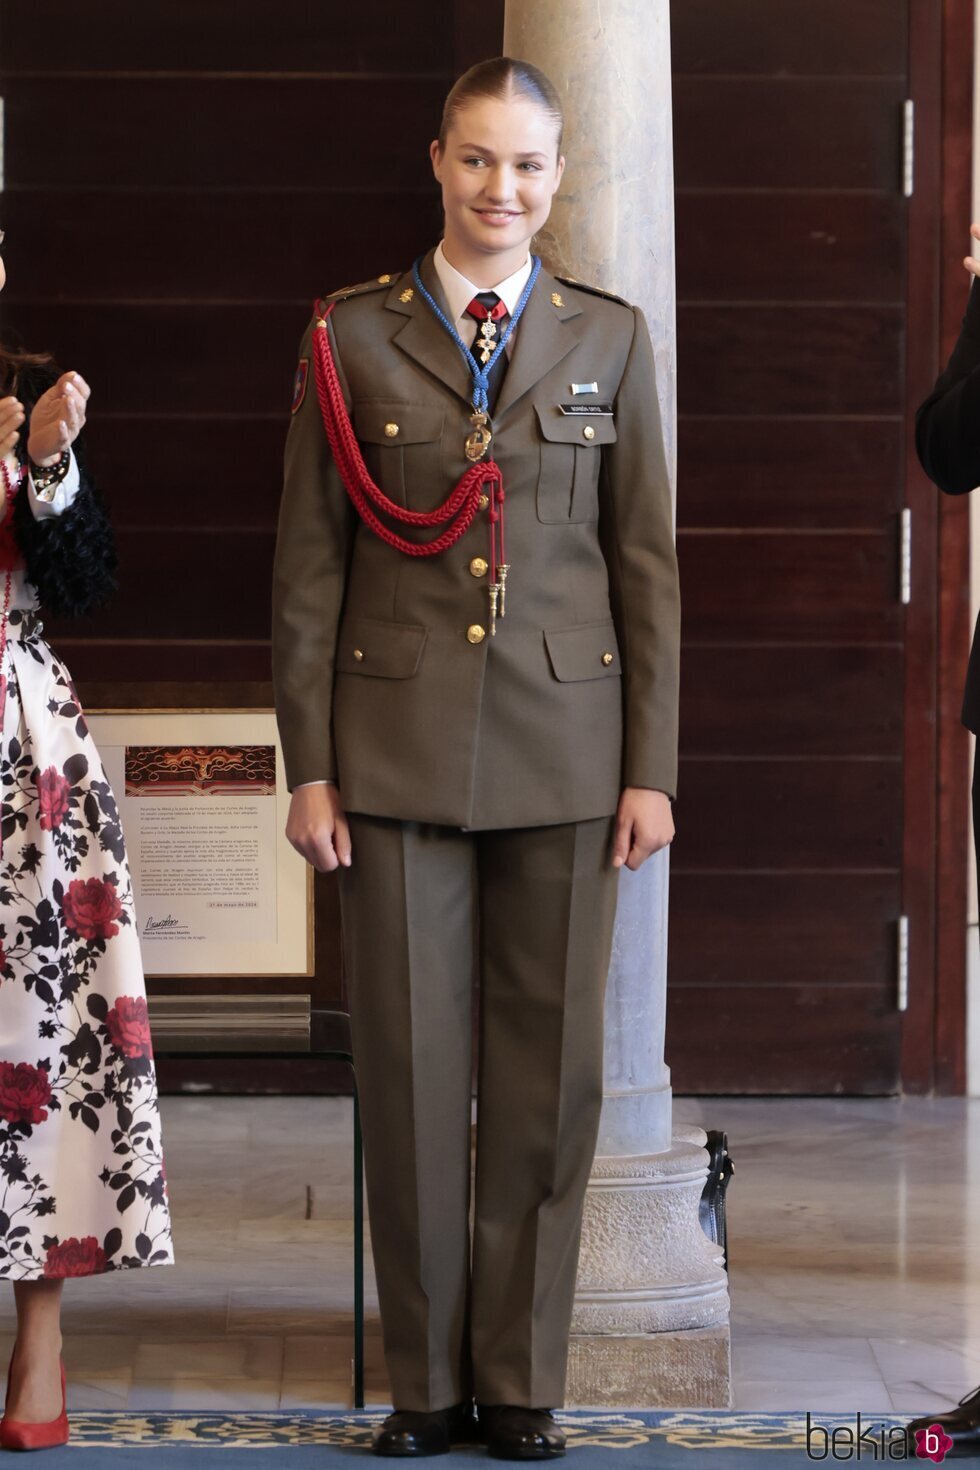 La Princesa Leonor con el uniforme de la Academia General Militar en la entrega de la Medalla de las Cortes de Aragón